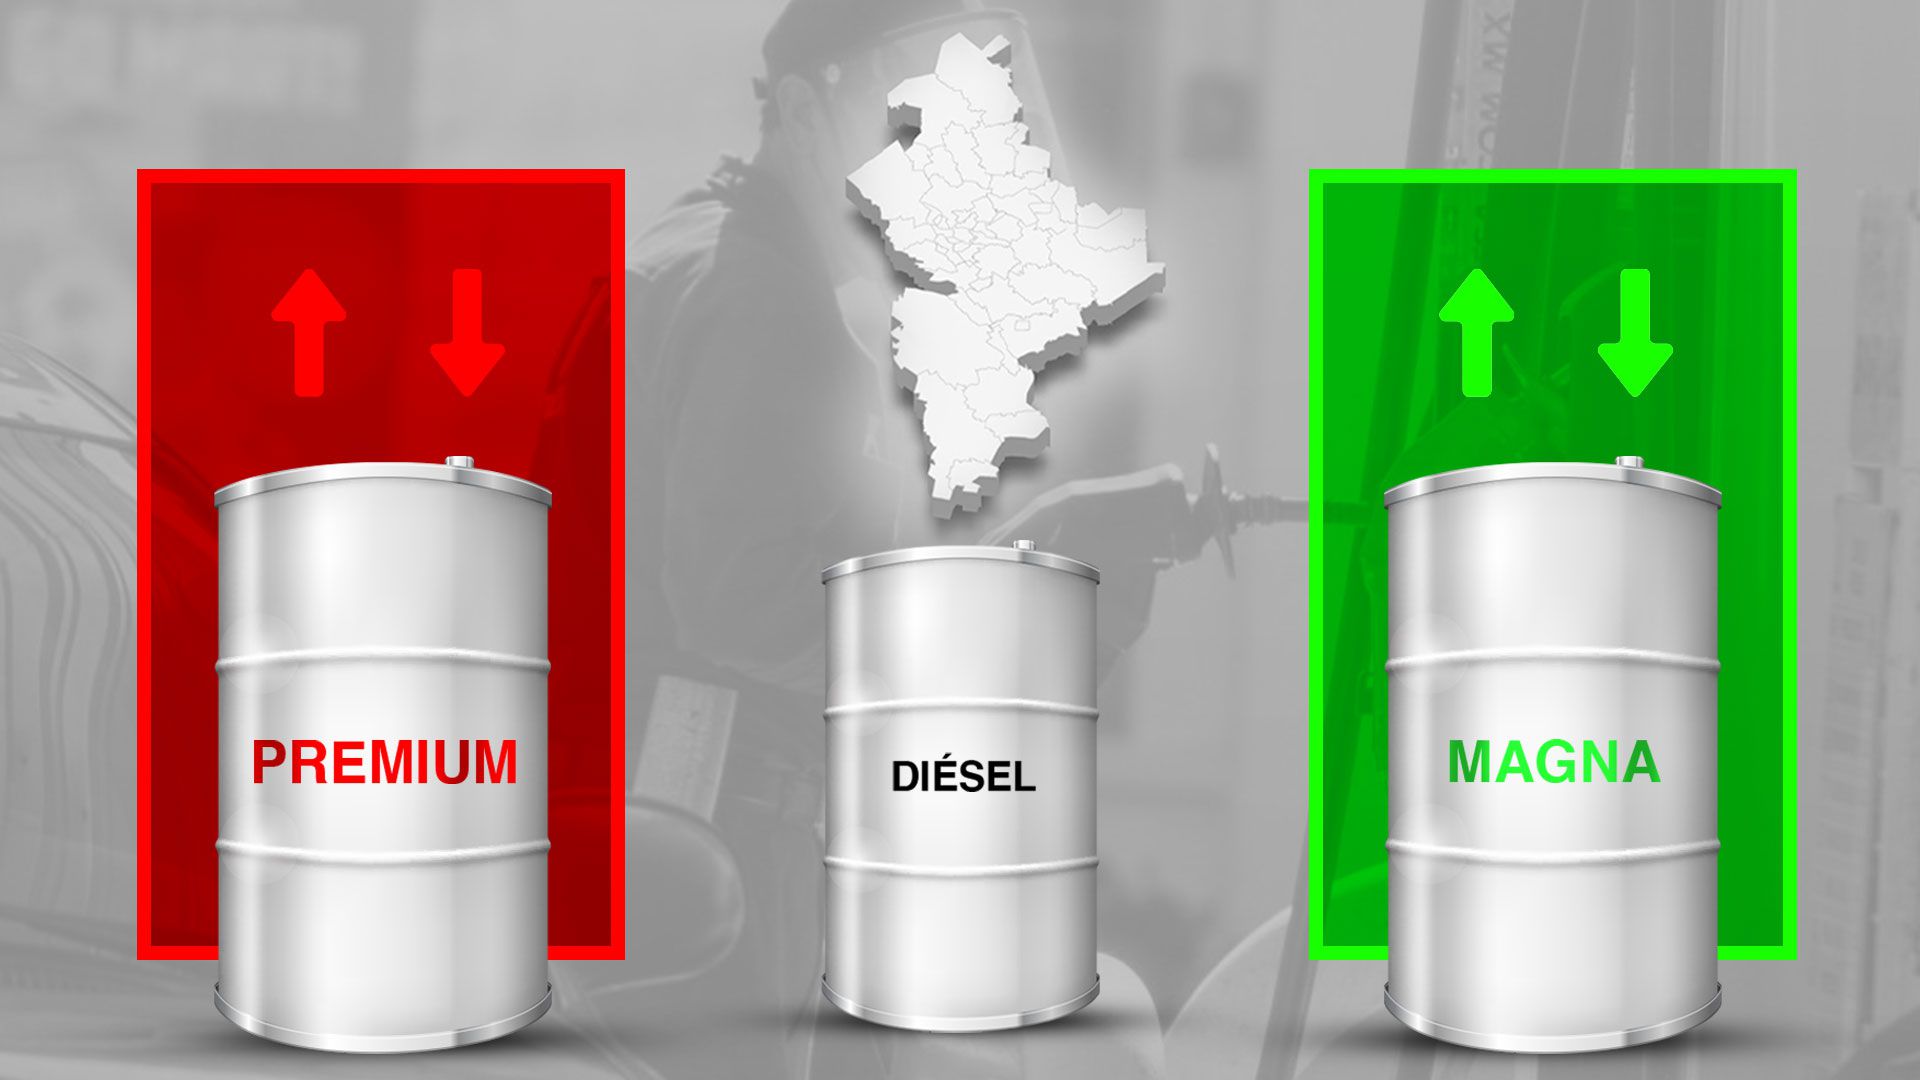 Precio de la gasolina en Nuevo León: Magna, Premium y diésel este 29 de mayo